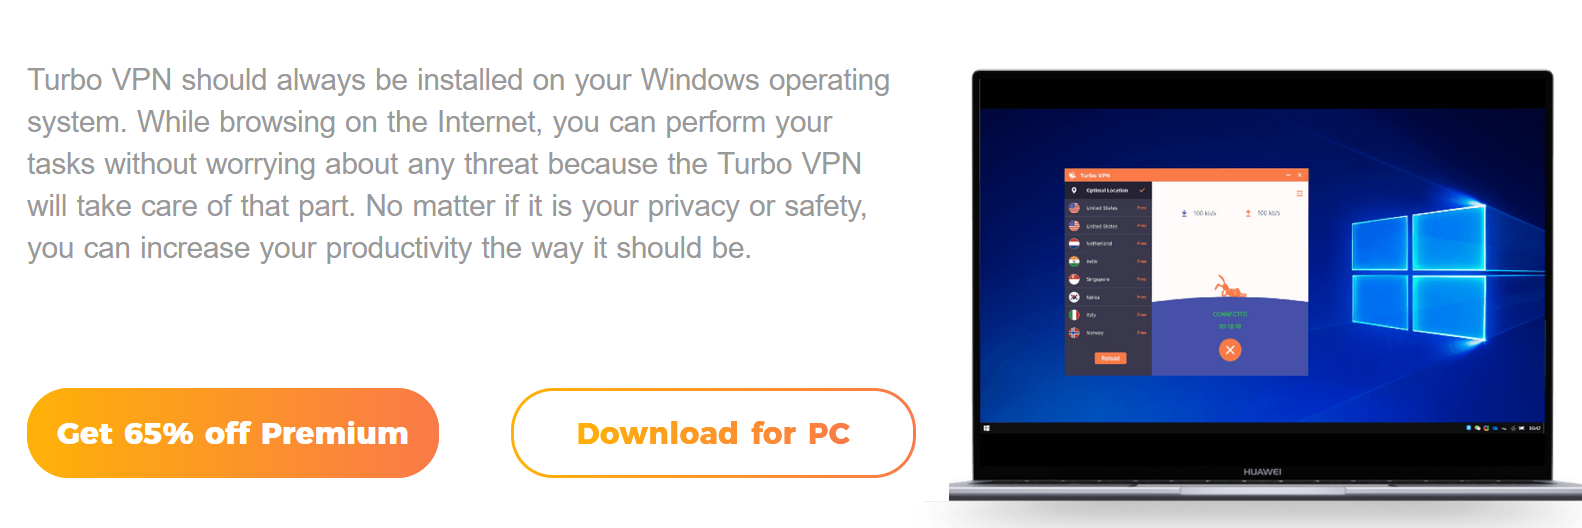 Turbo VPN for windows